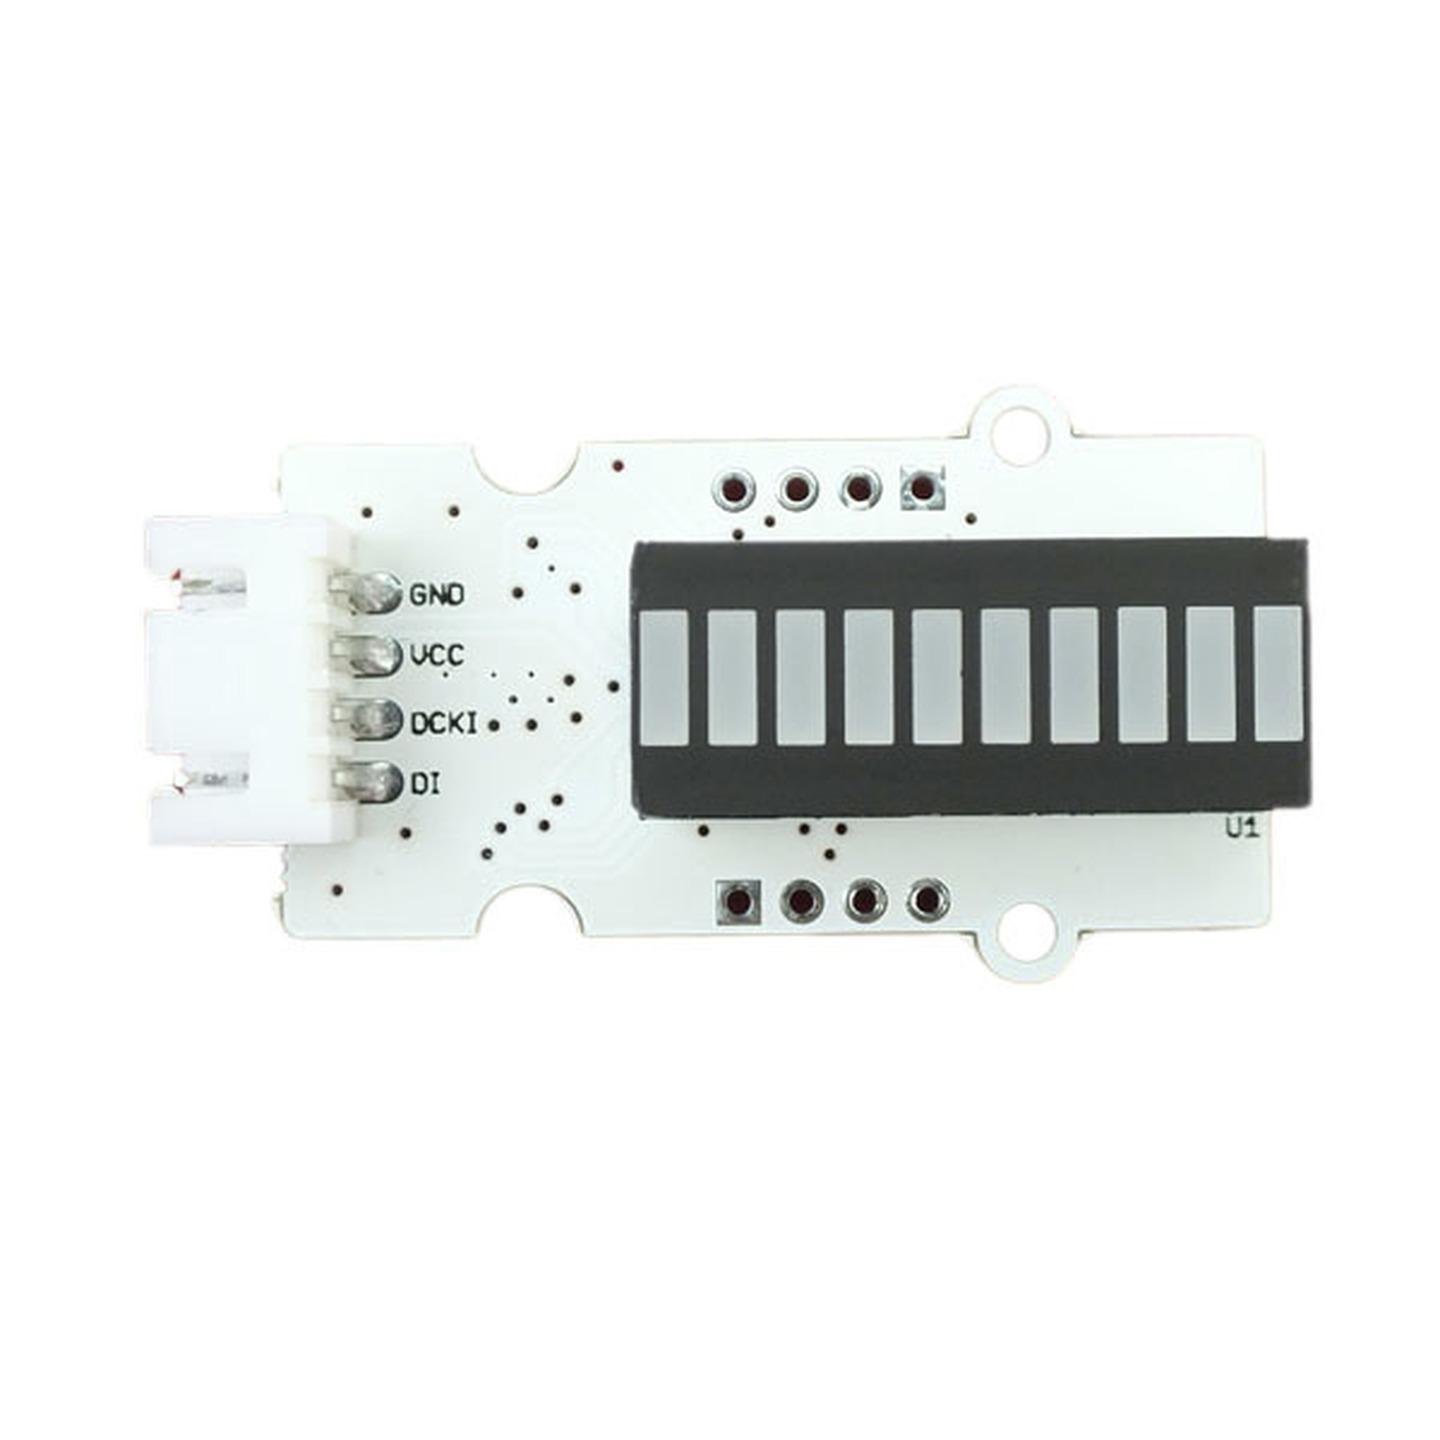 Linker LED Bar for Arduino